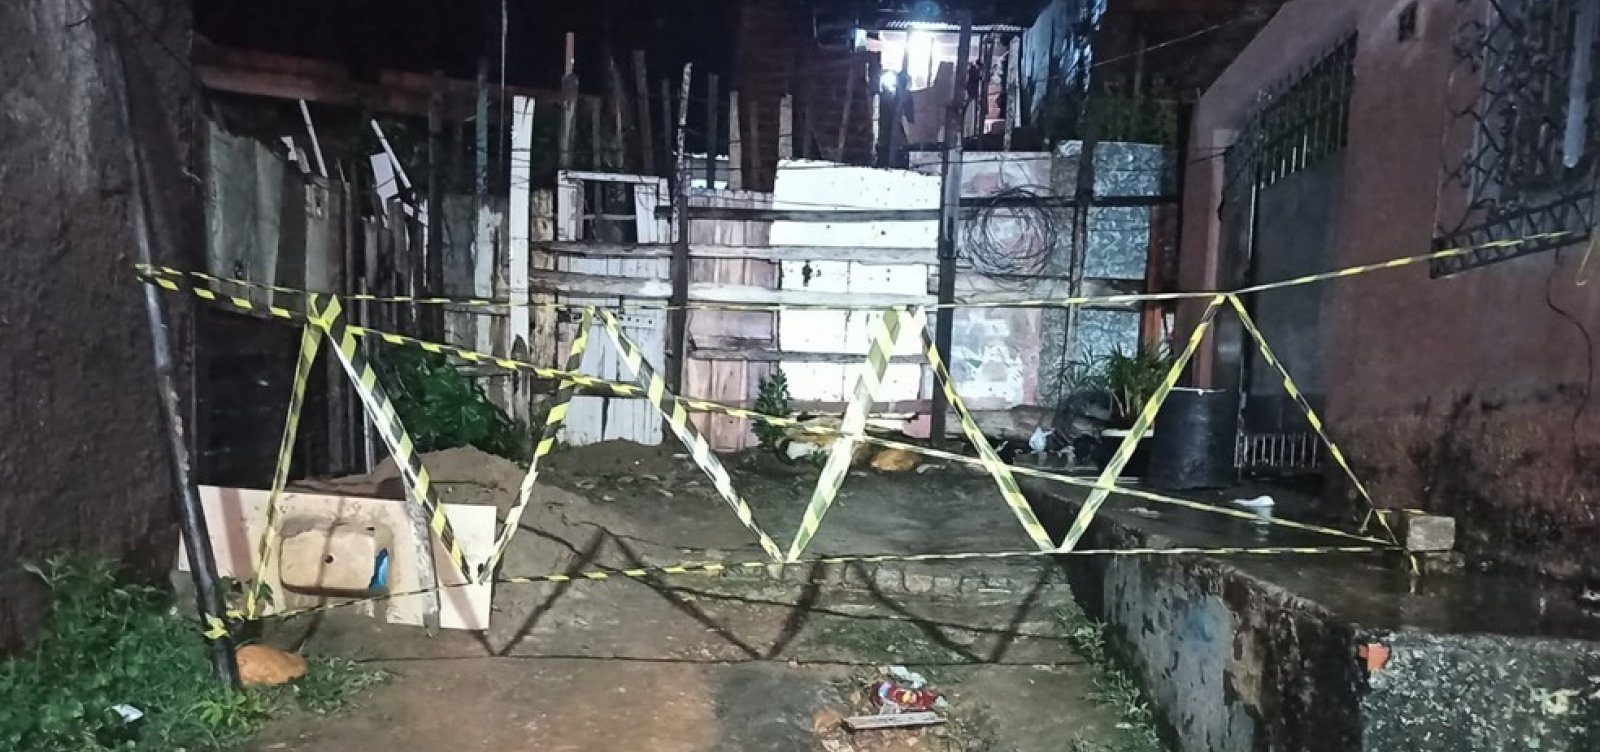 Criança morre depois que parede de casa desaba em Itapetinga 